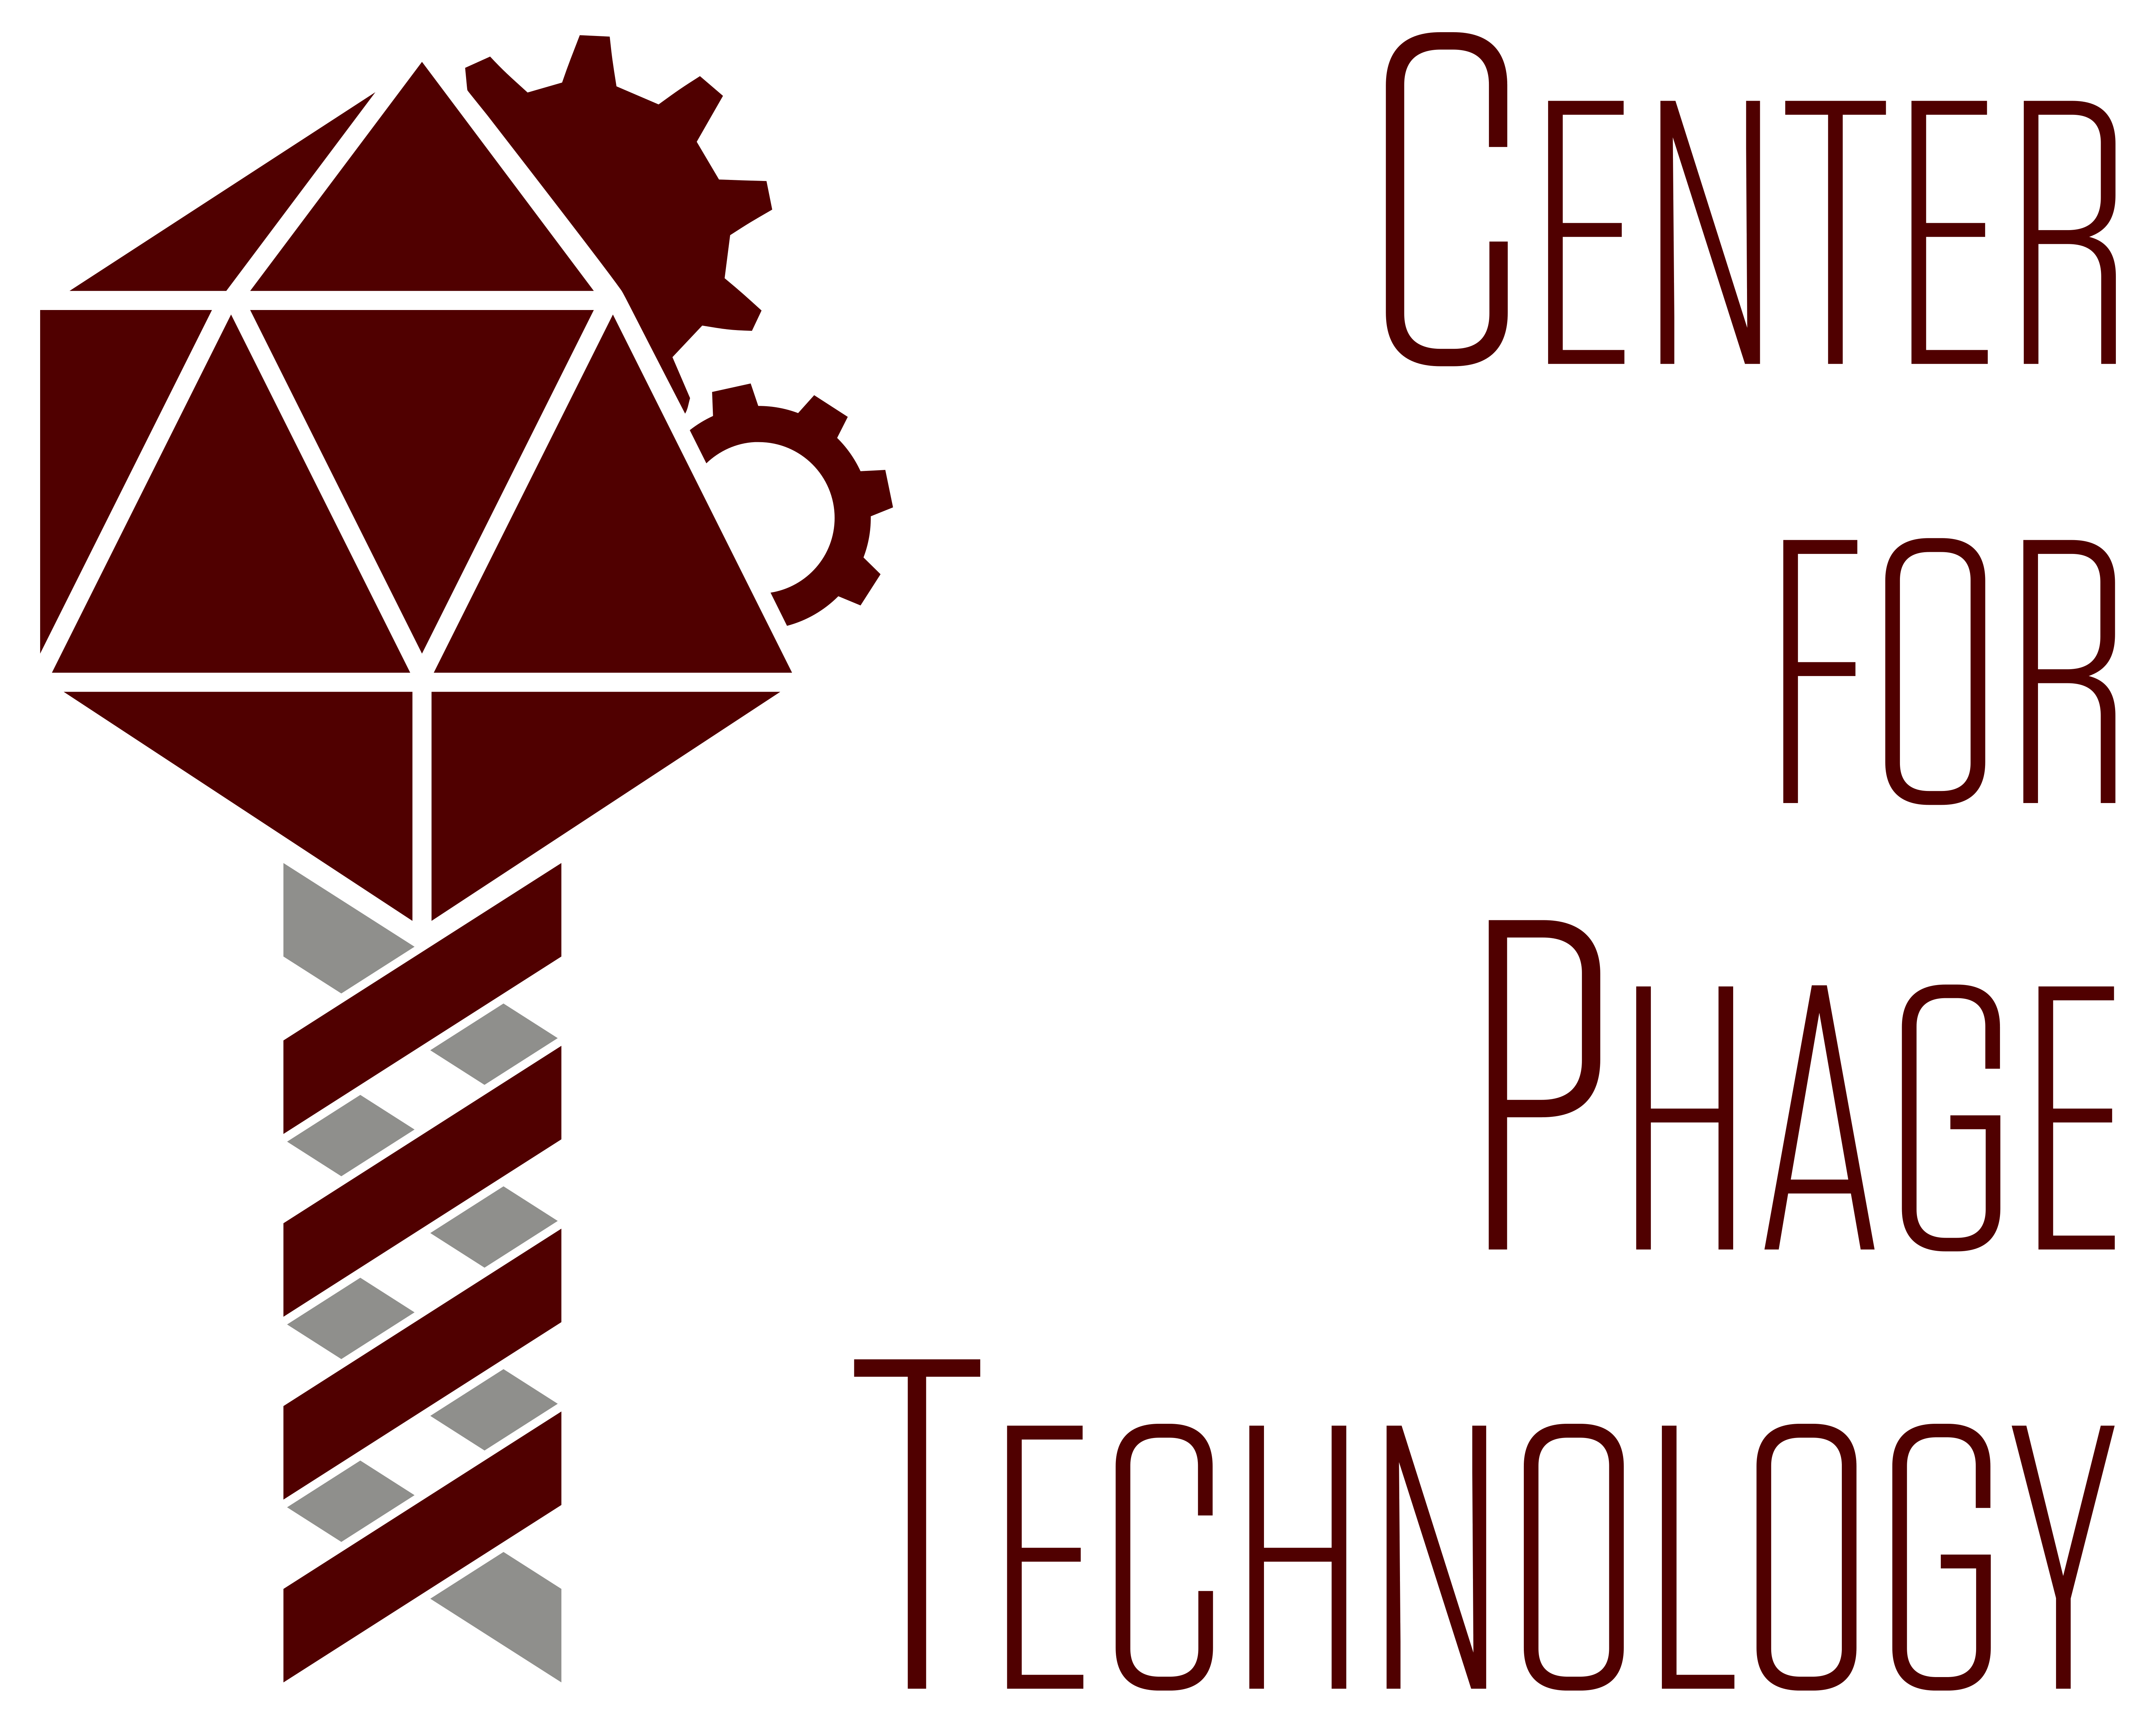 Center for Phage Technology